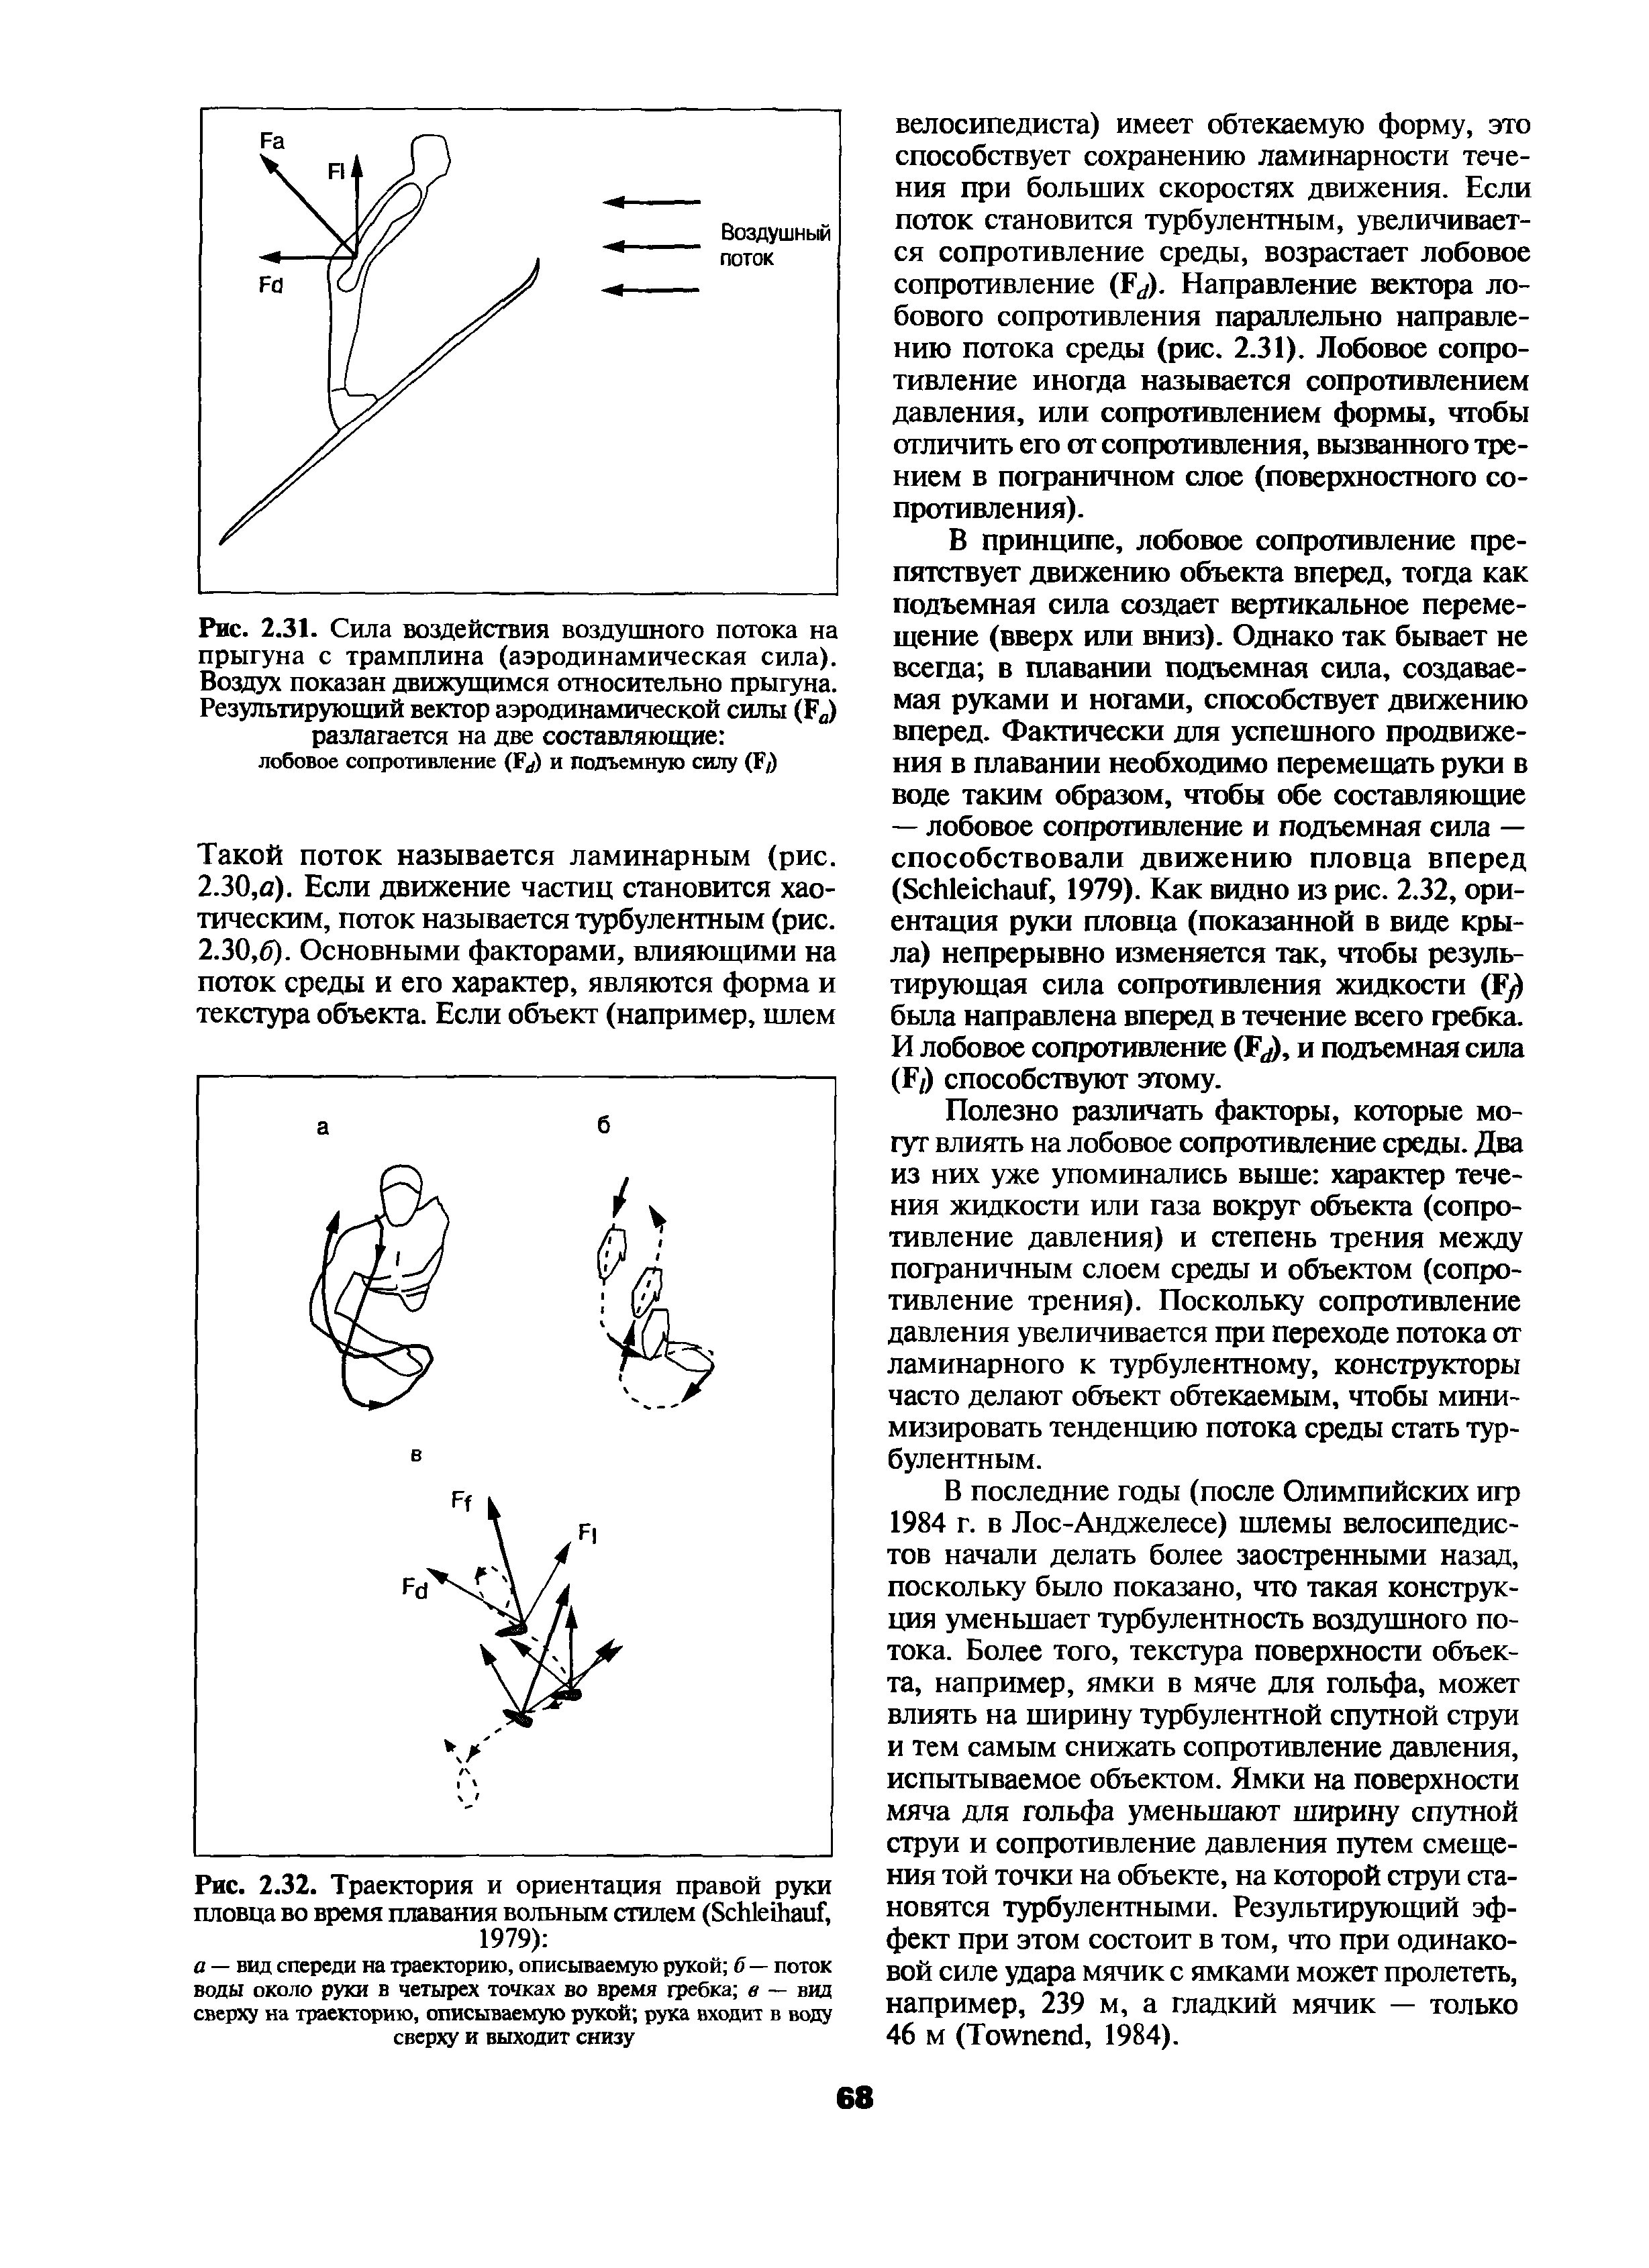 Рис. 2.32. Траектория и ориентация правой руки пловца во время плавания вольным стилем (БсЫеЙгаиГ, 1979) ...